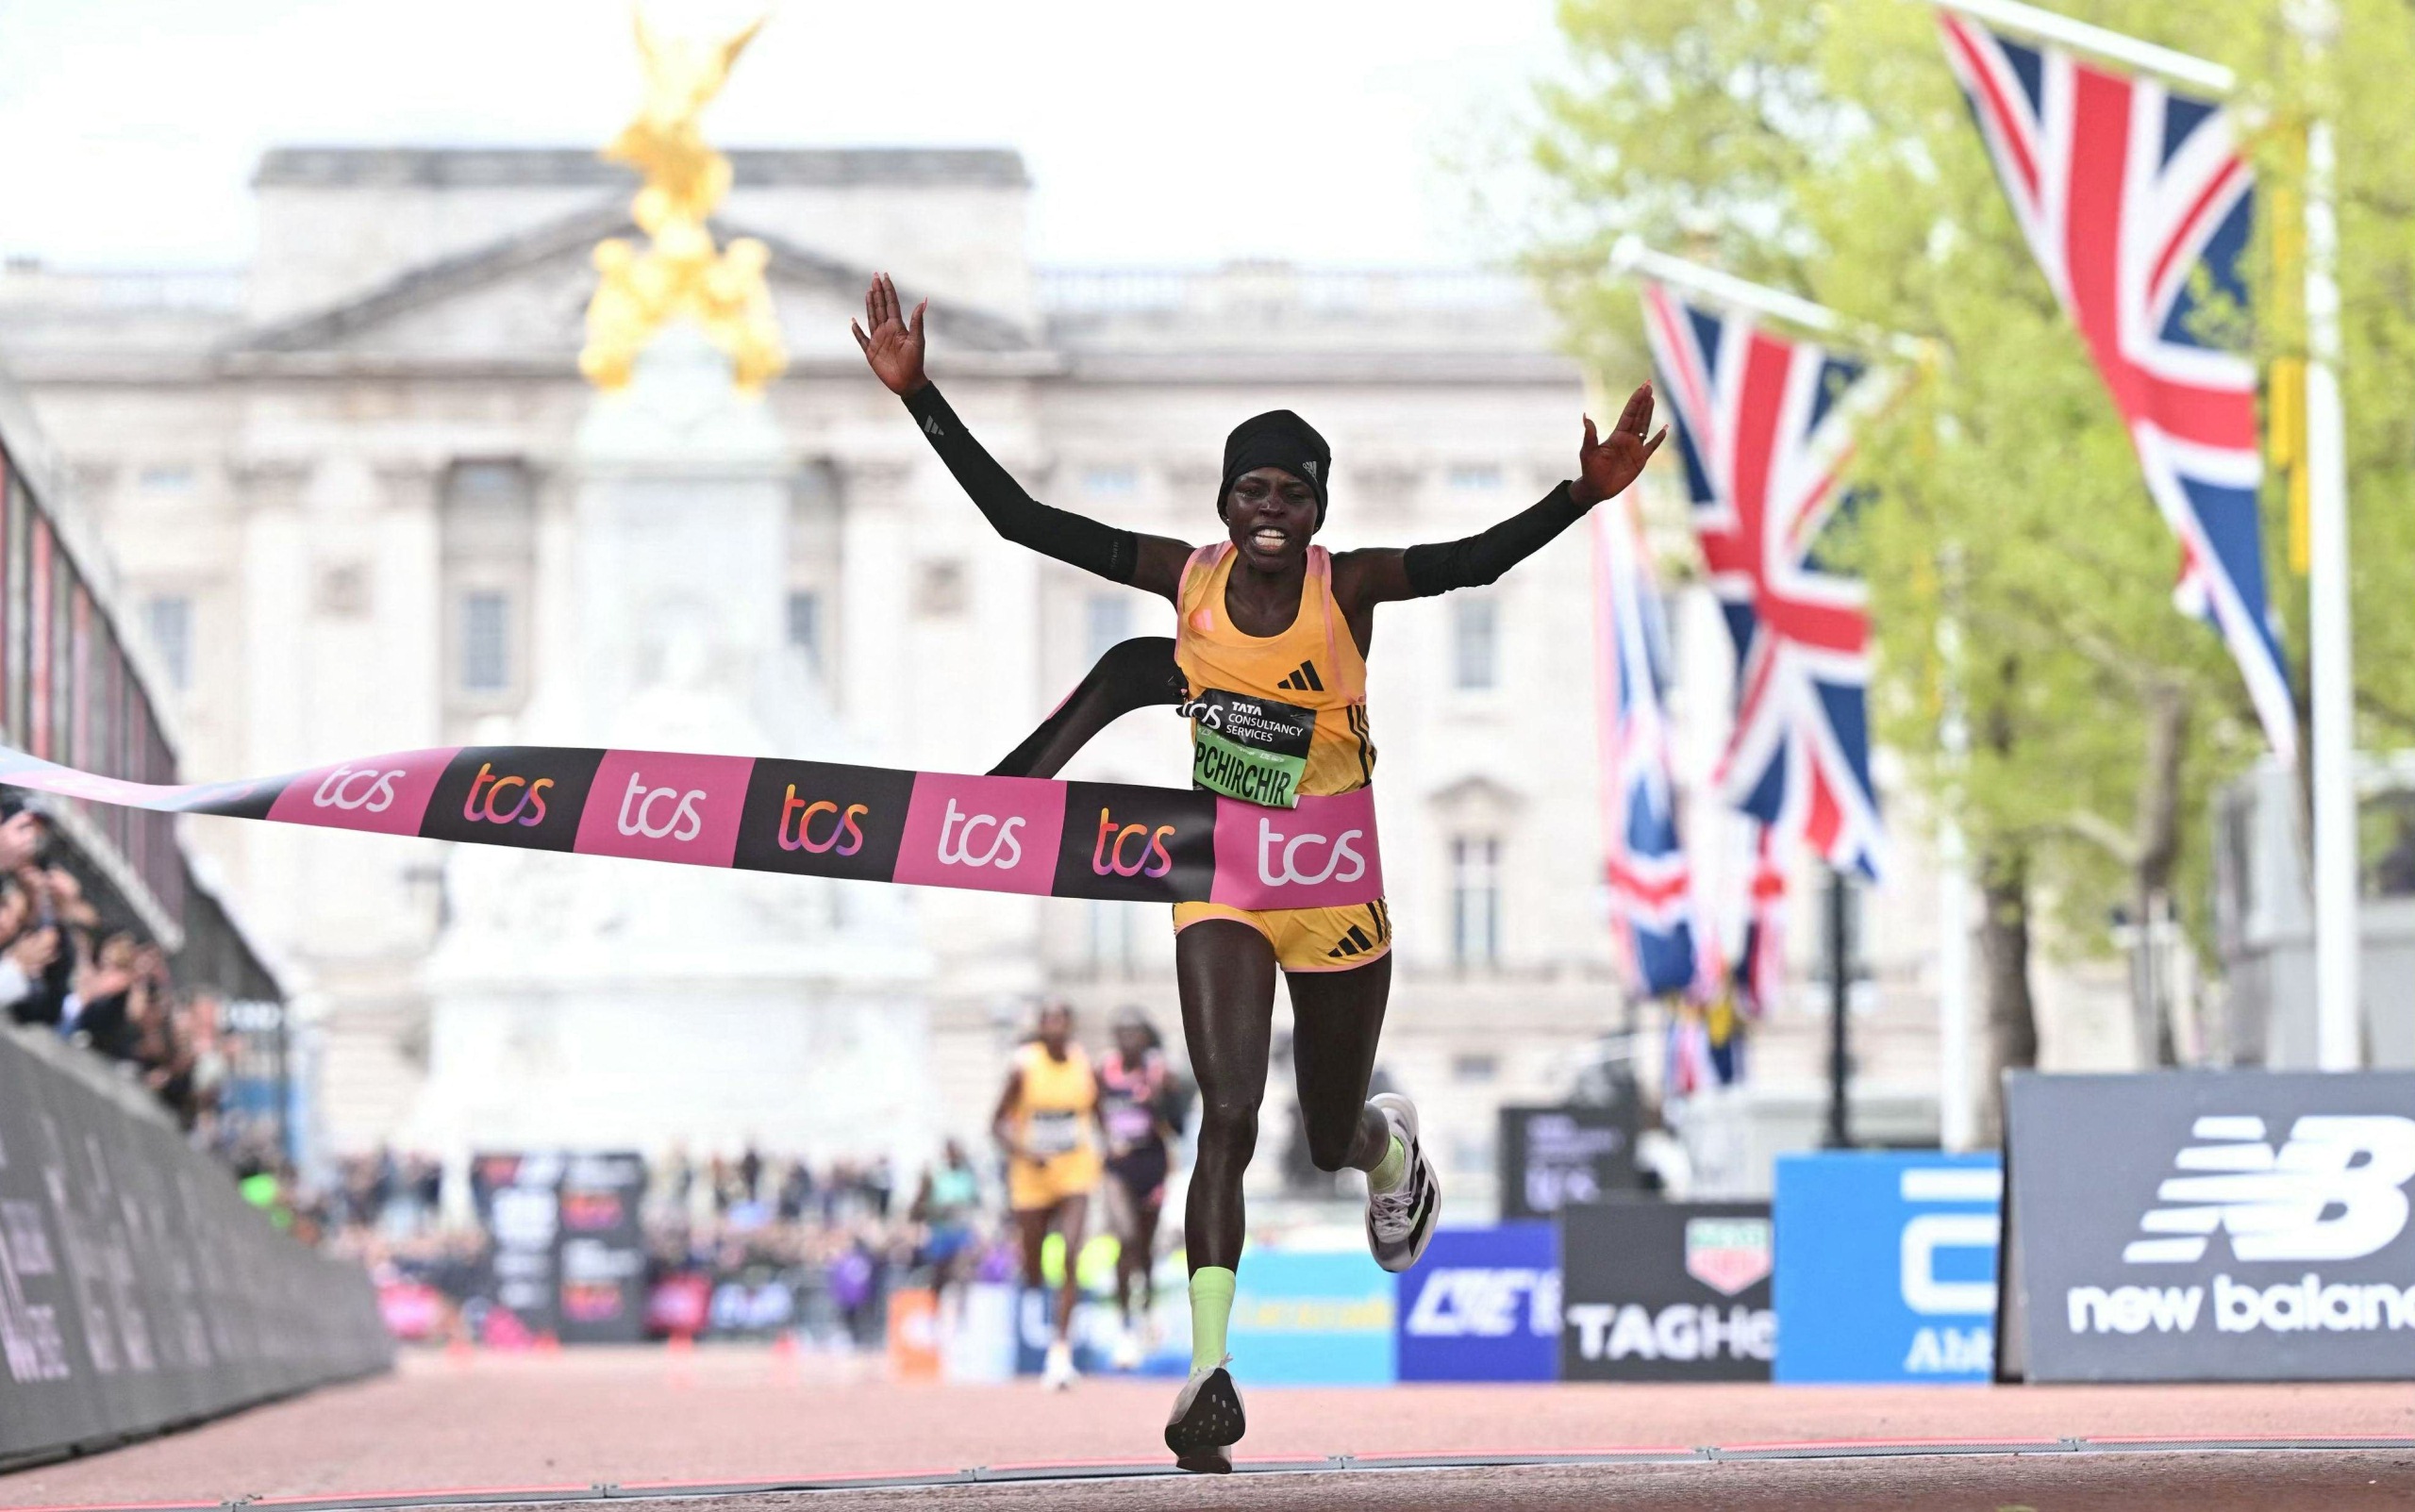 kenialle tuplavoitto lontoon maratonissa – naisten maailmanennätys meni uusiksi